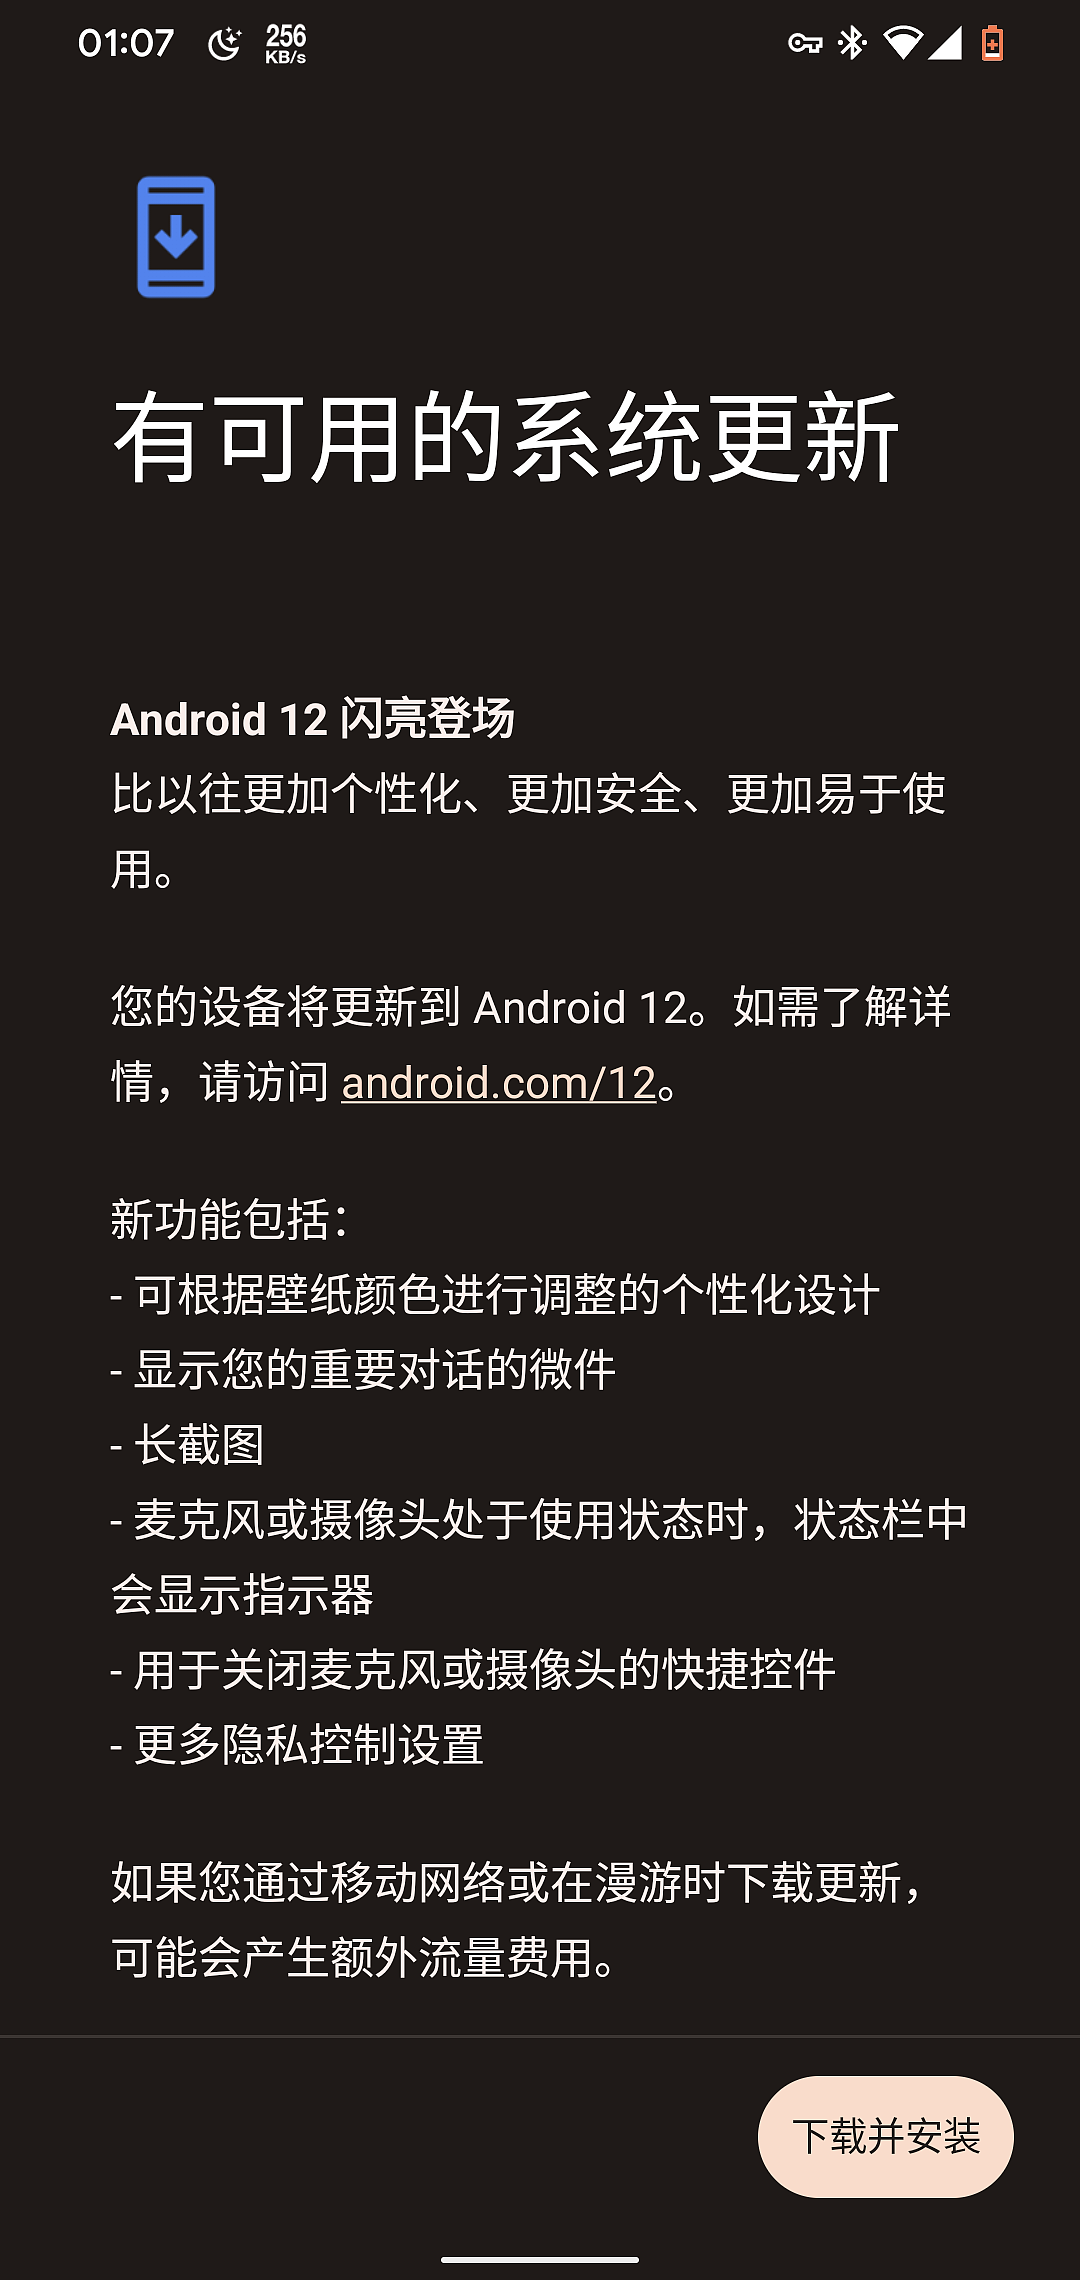 安卓 12 正式版发布，谷歌 Android 12 闪亮登场：基于壁纸颜色个性化设计、长截图、新状态栏指示器...(附更新内容) - 3